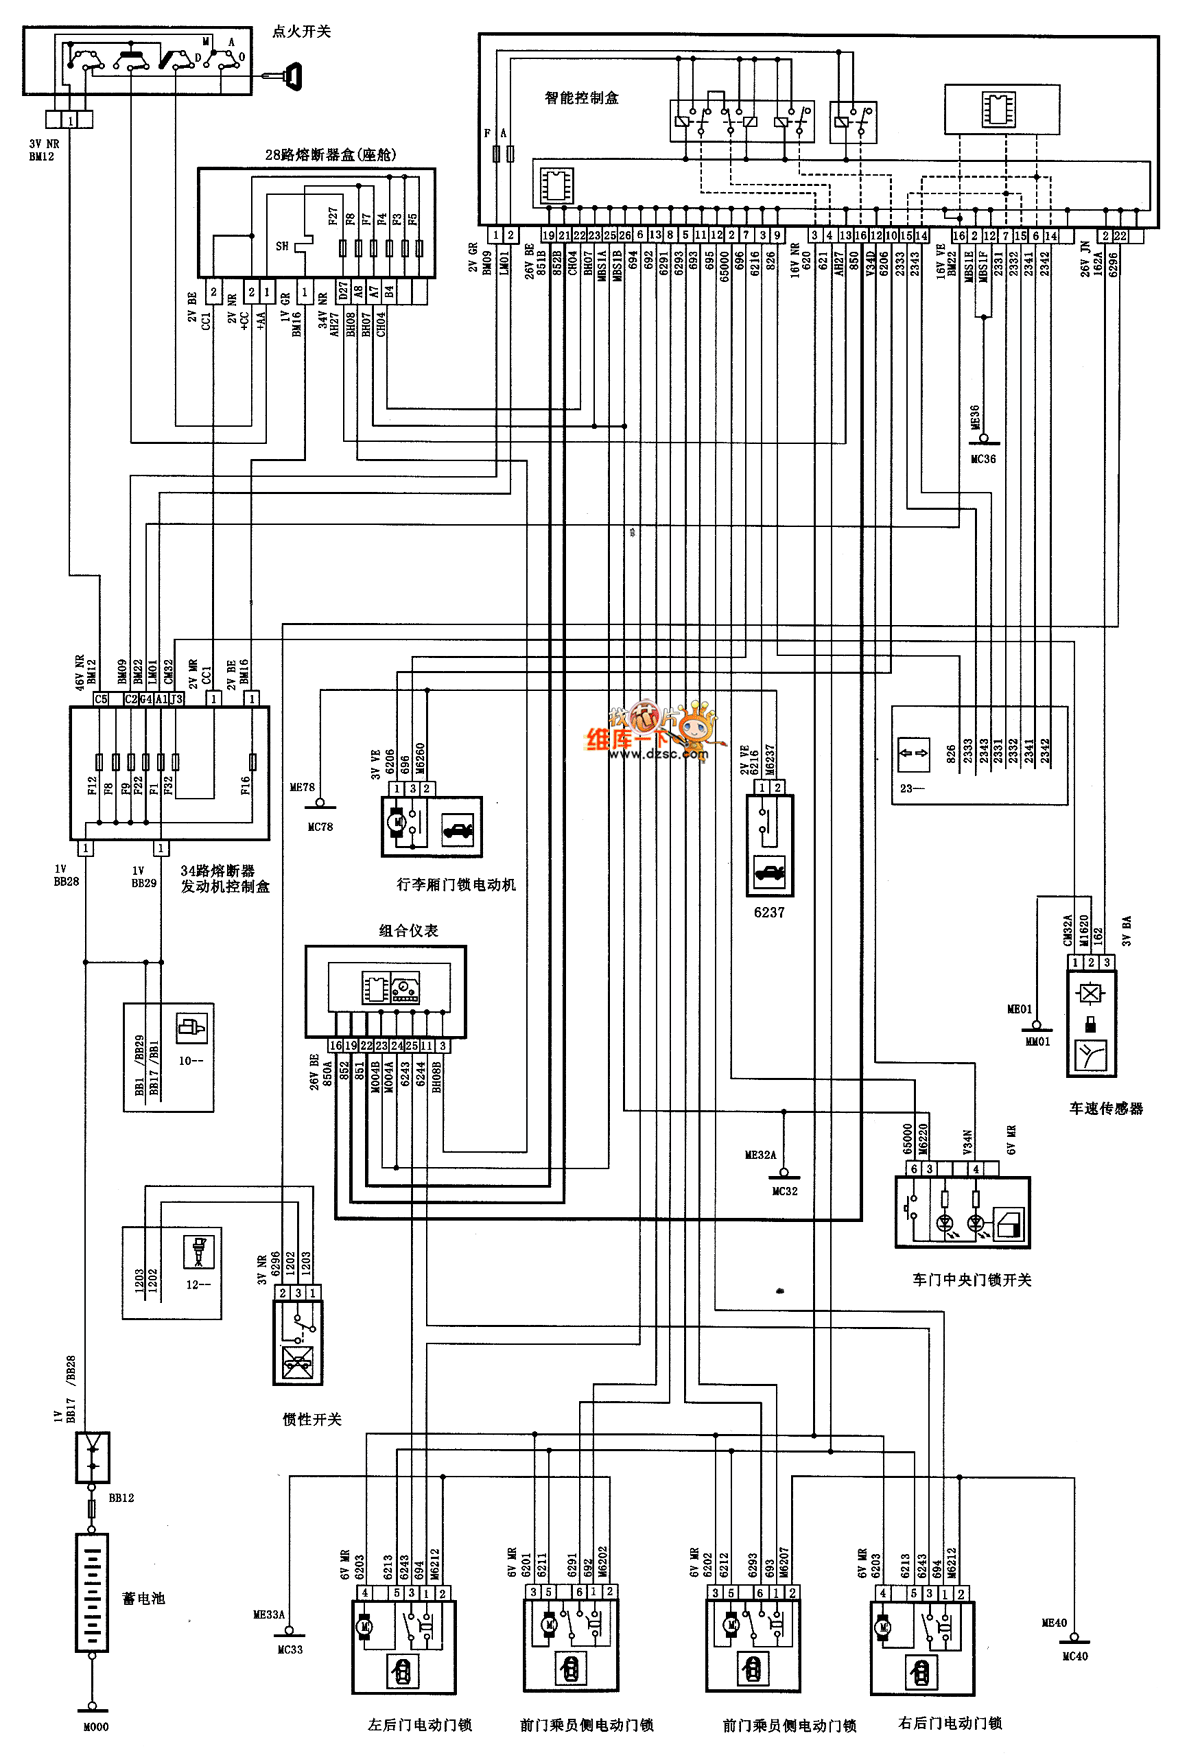 Central Lock Wiring Diagram from schematron.org